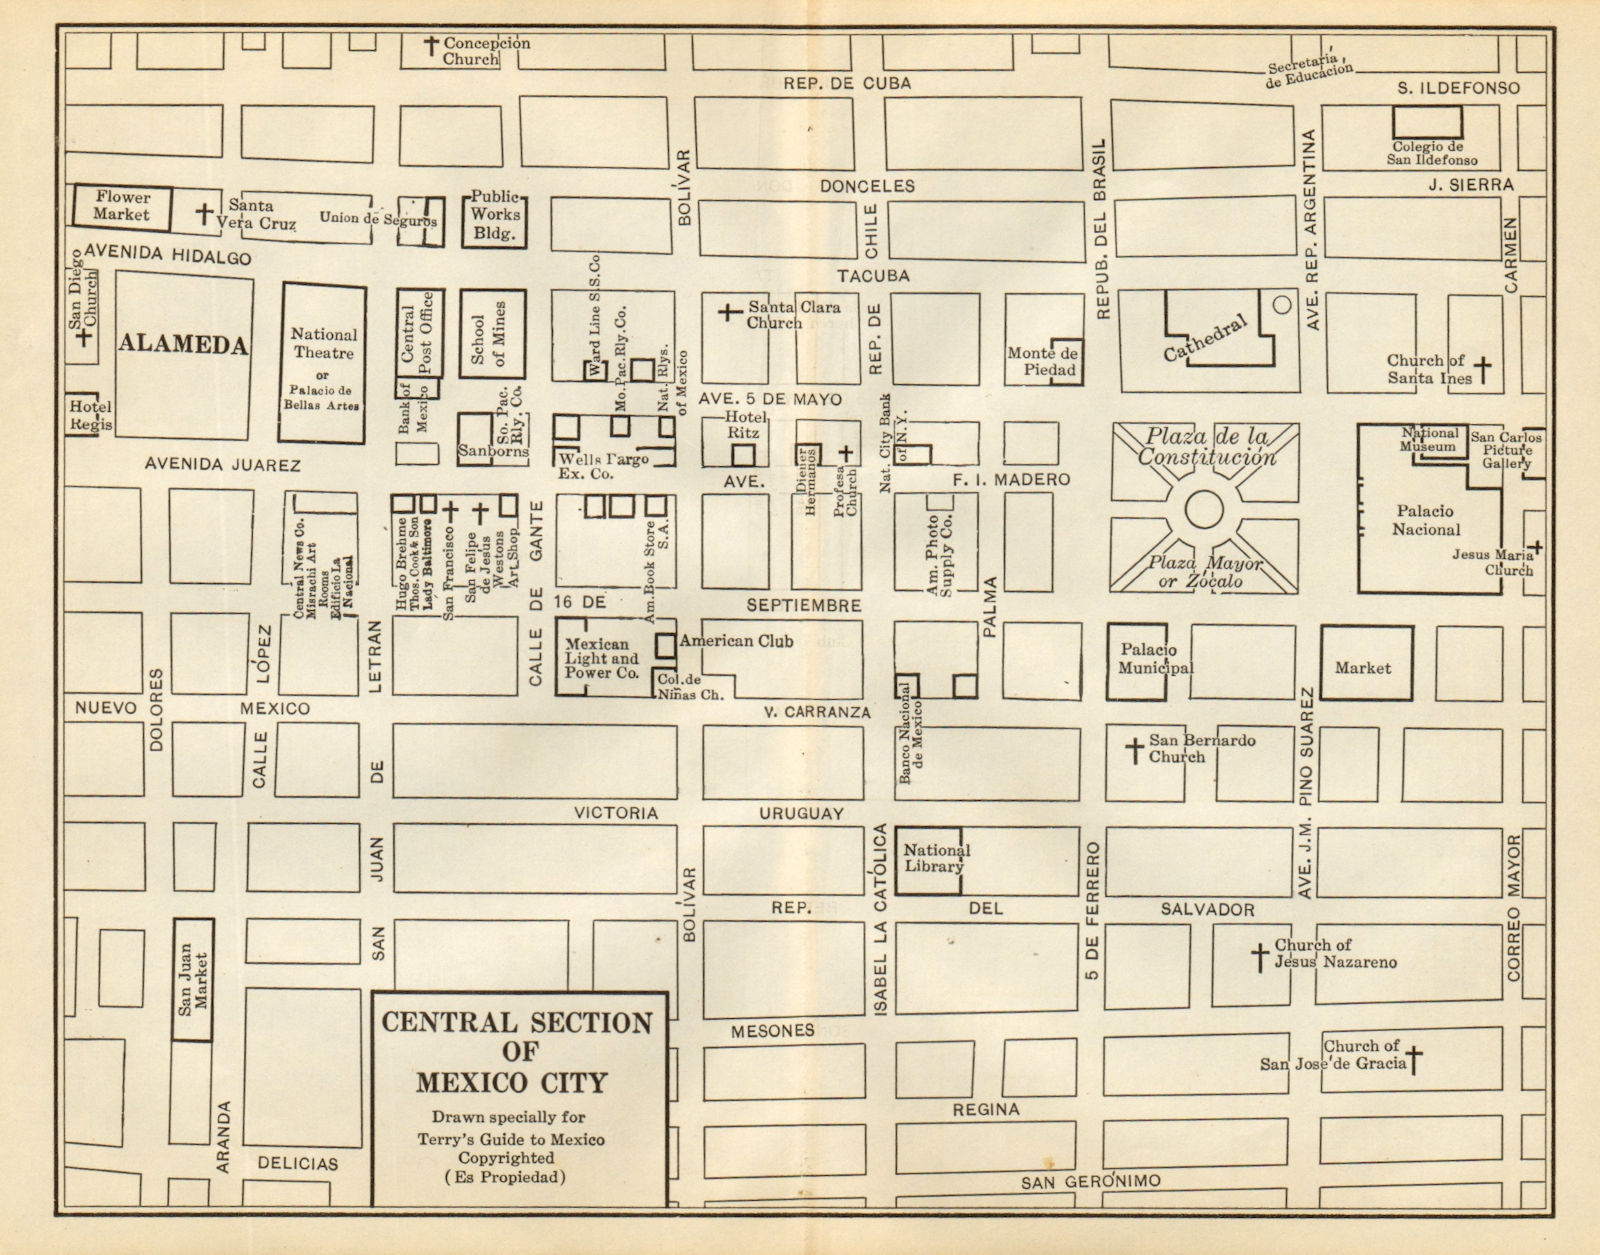 Central section of MEXICO CITY. Mapa de la Ciudad de Mexico. Town plan 1935